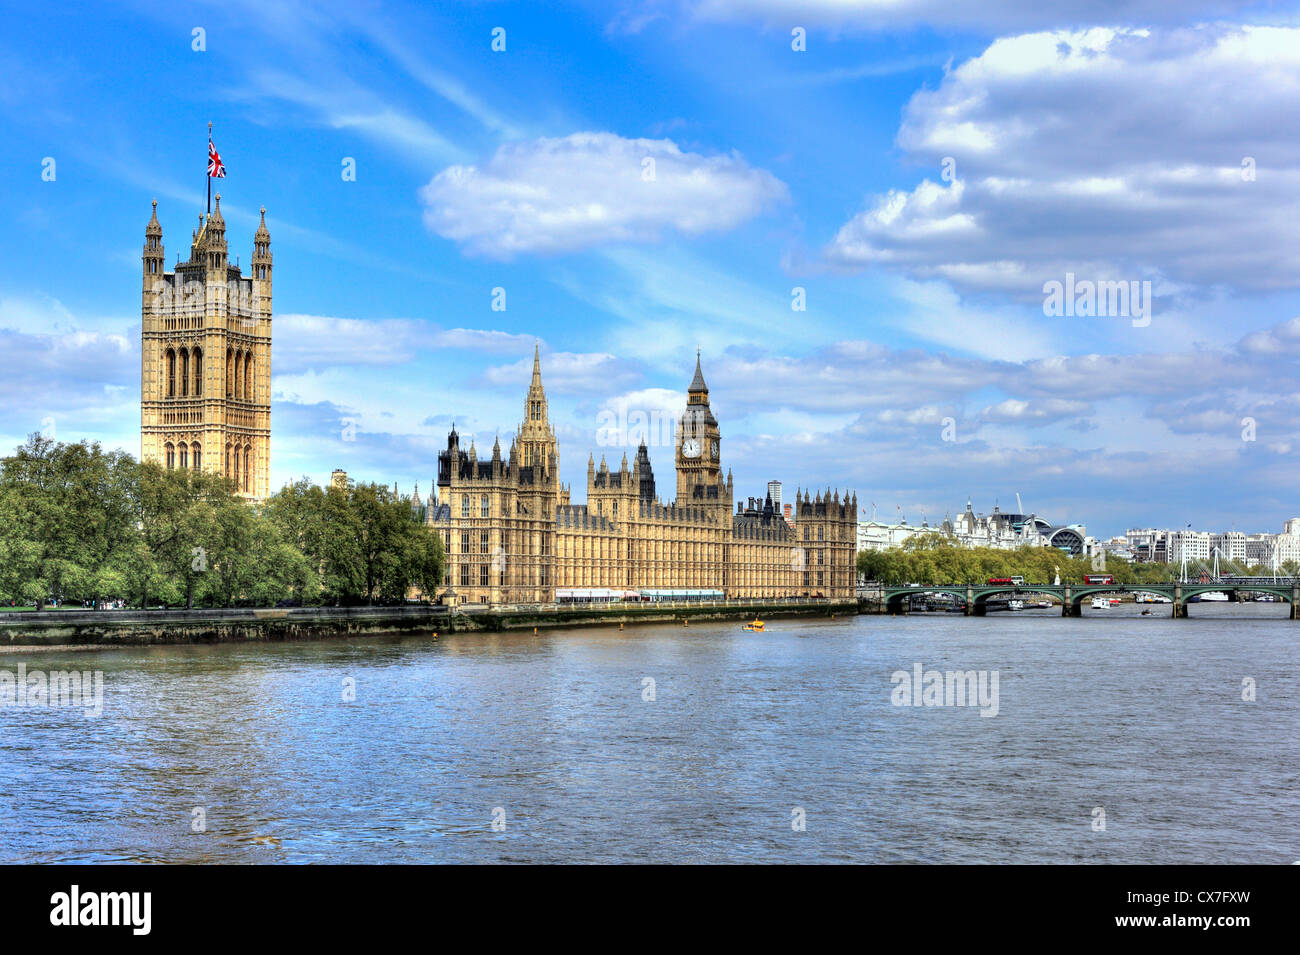 Le Palais de Westminster et Big Ben (Parlement), London, UK Banque D'Images